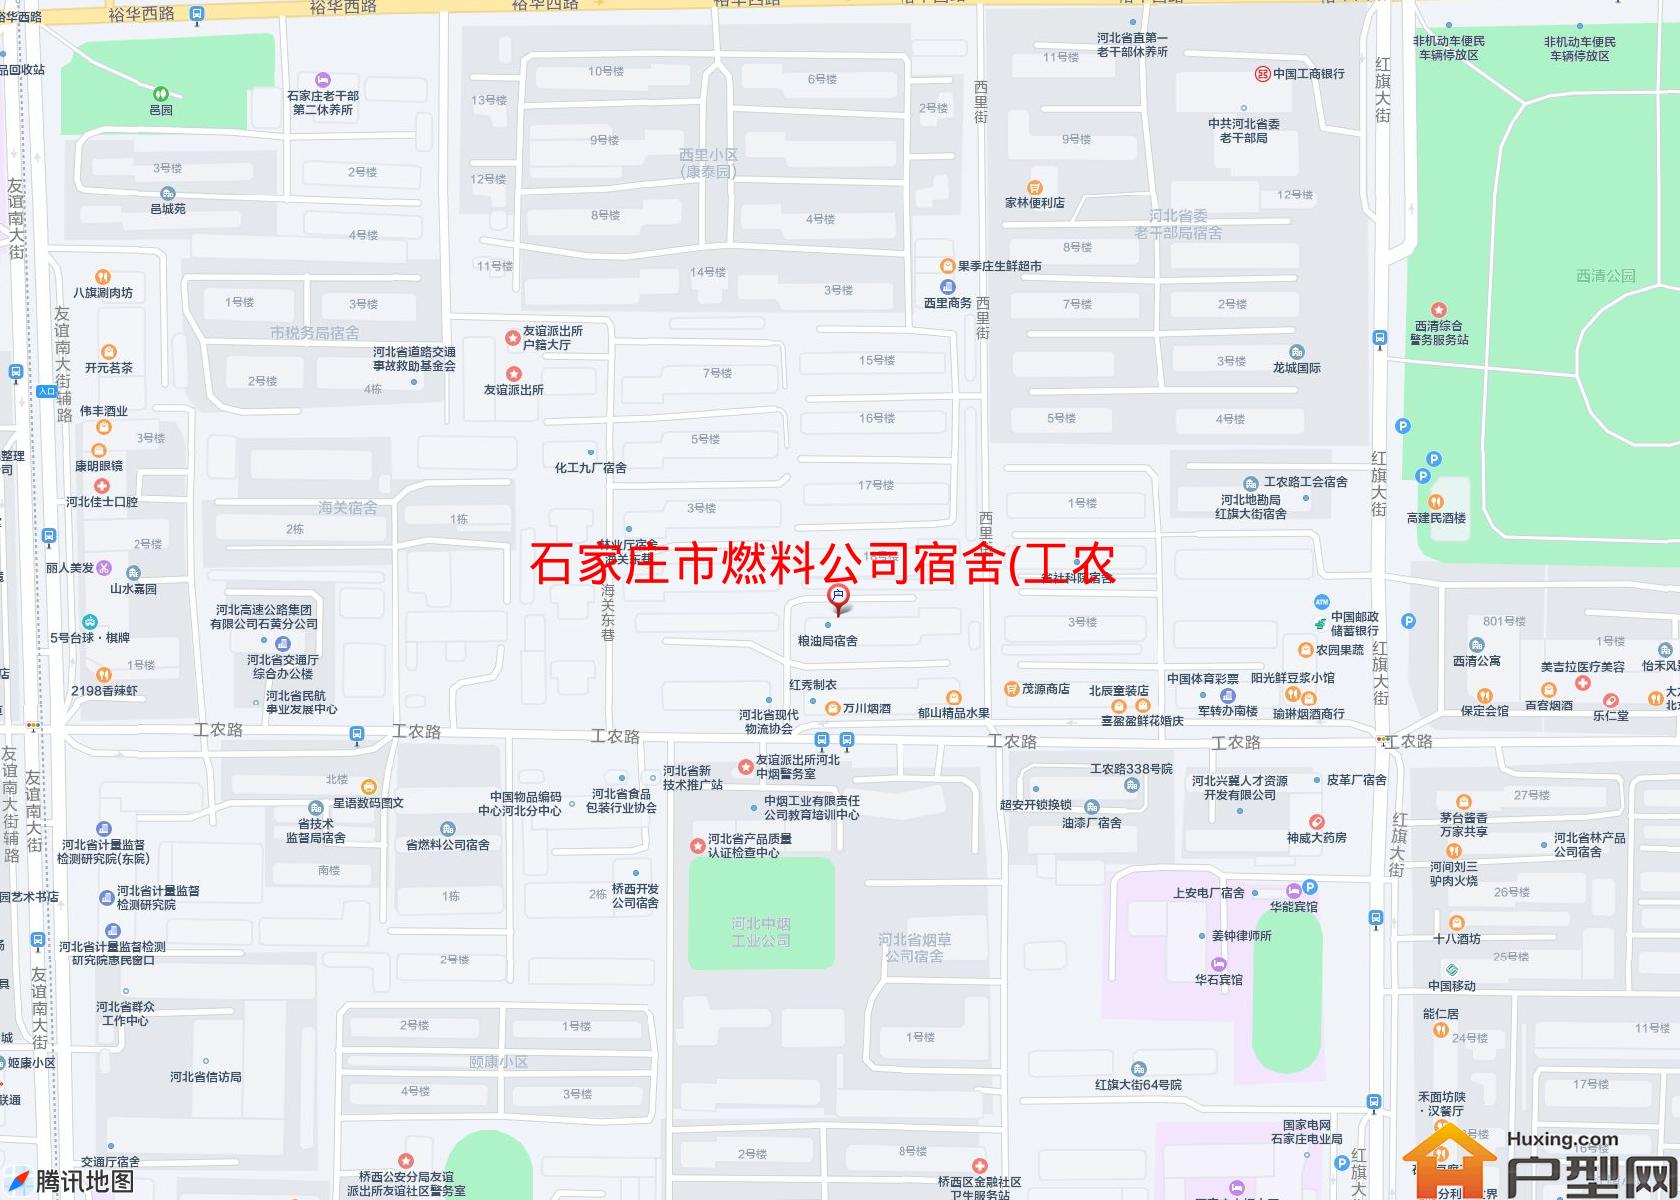 燃料公司宿舍(工农路)小区 - 户型网